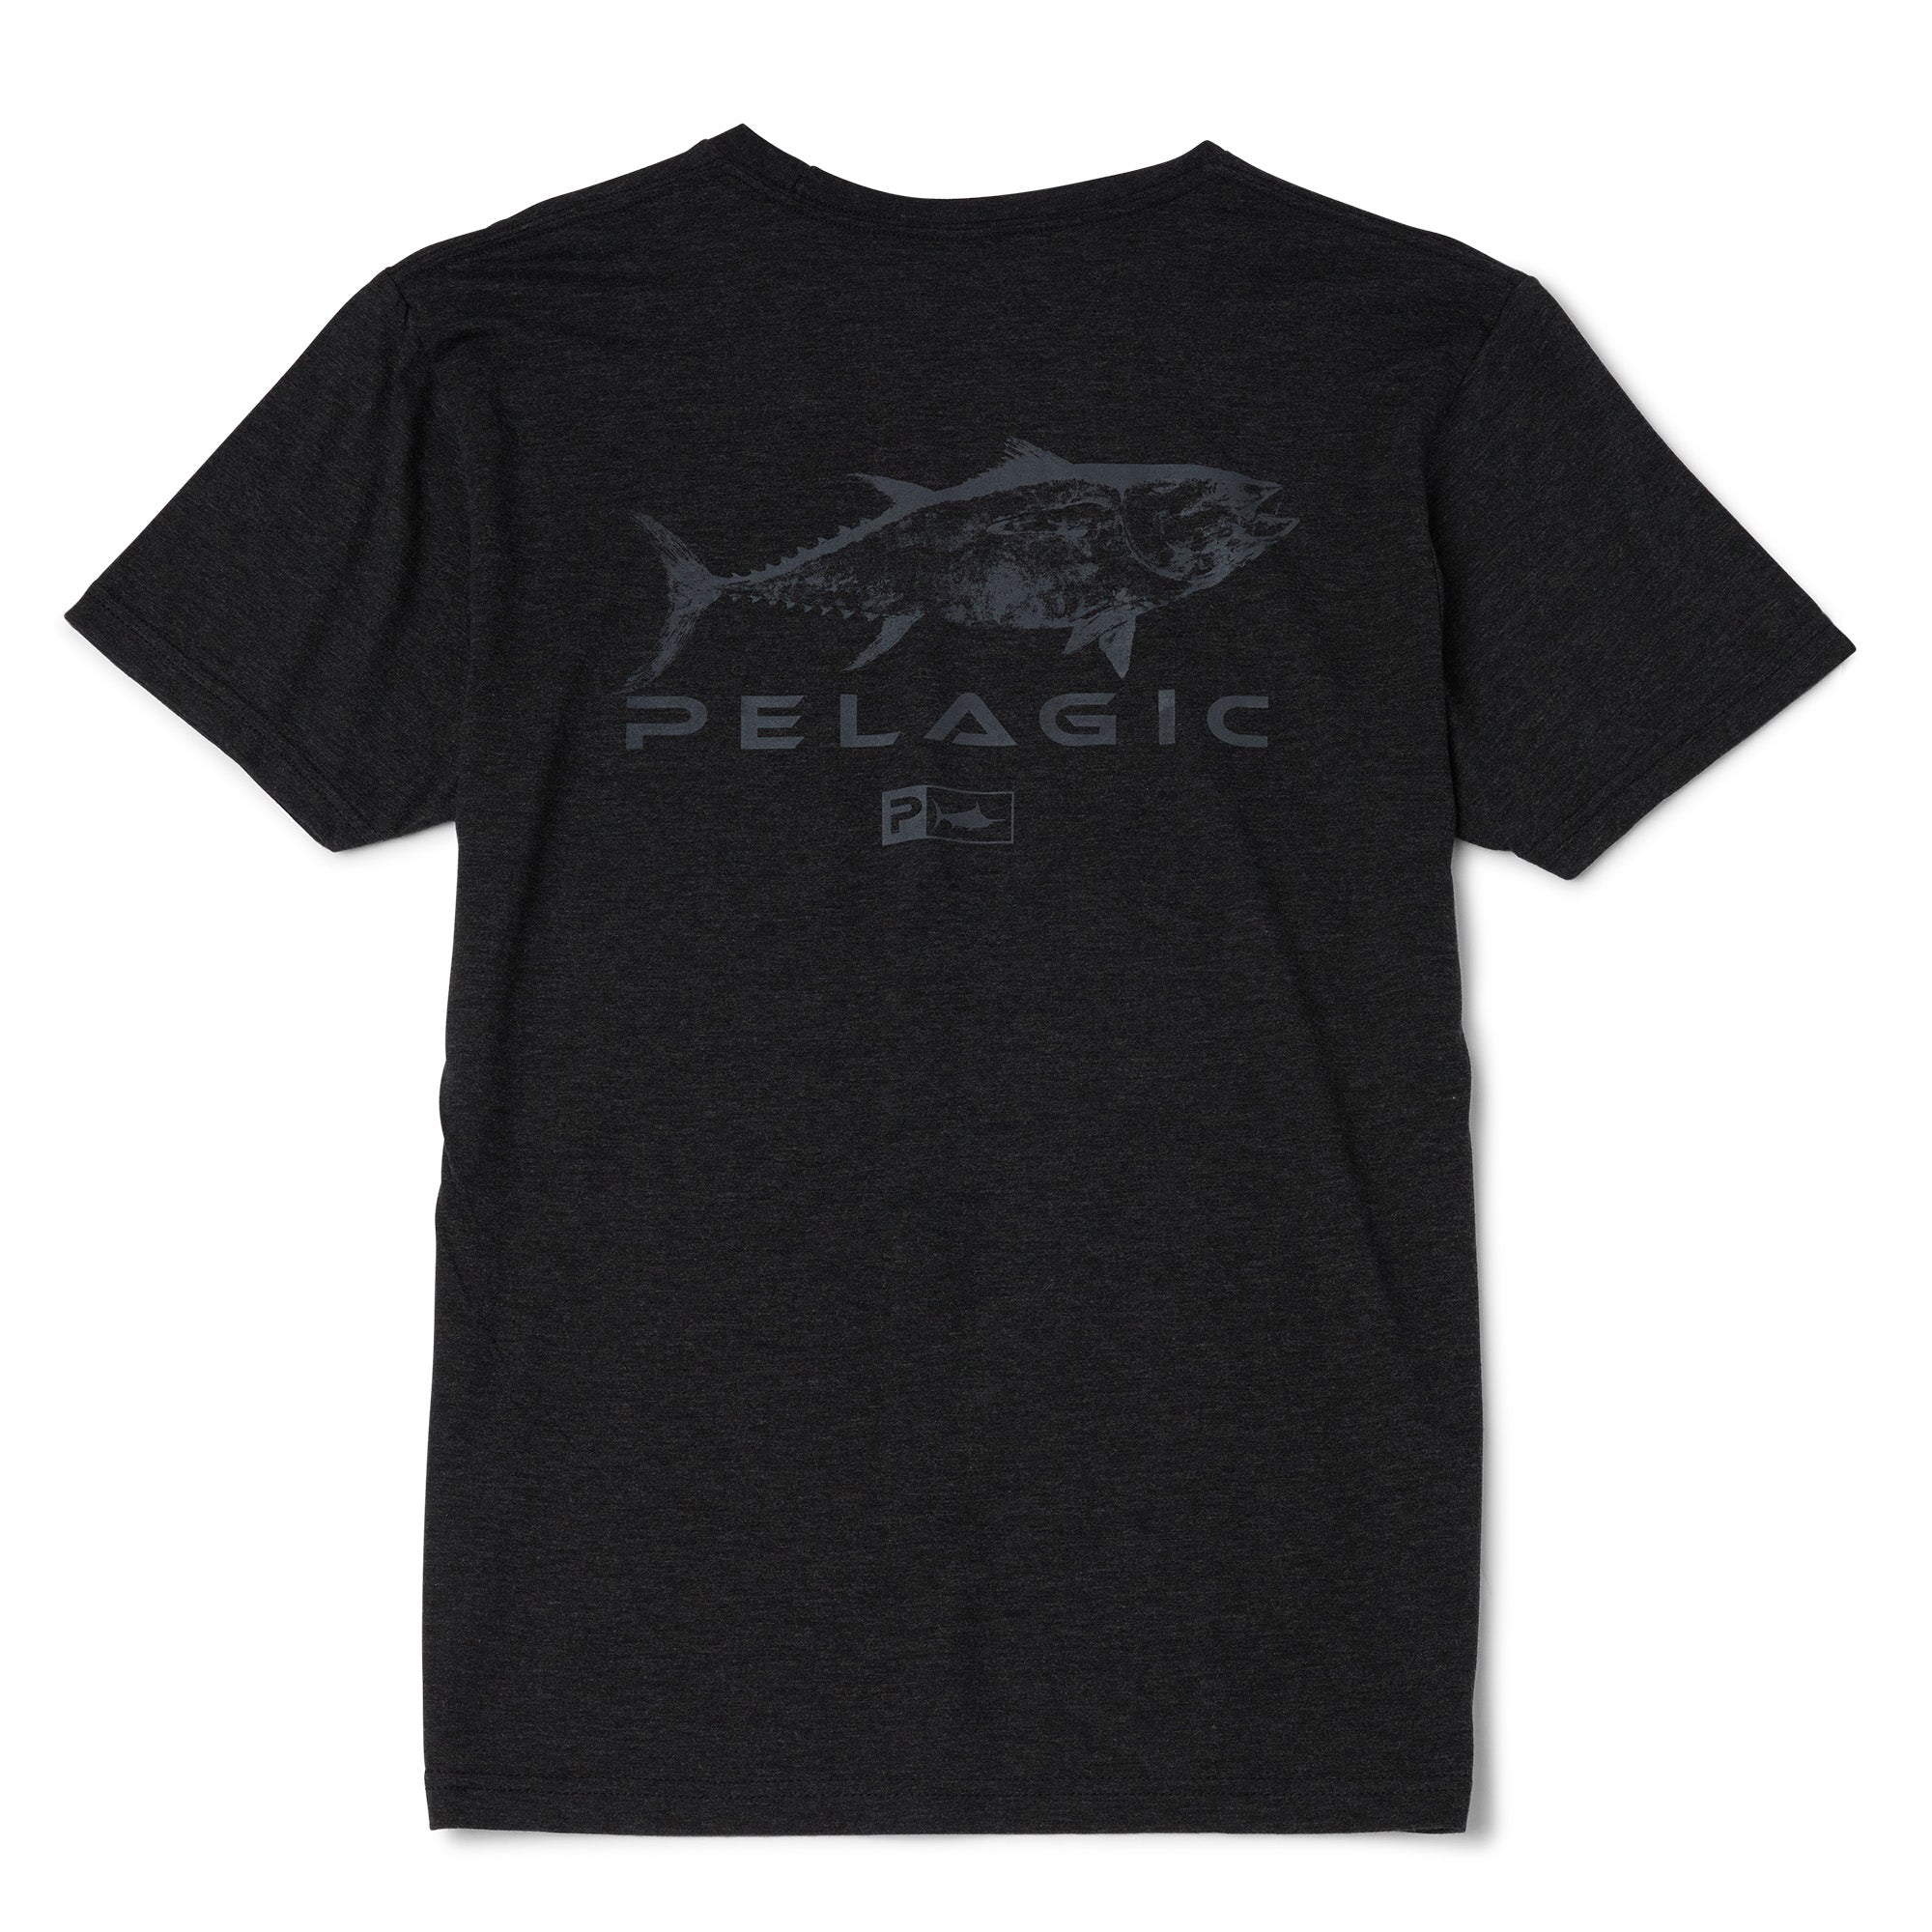 Gyotaku Tuna T-Shirt  PELAGIC Fishing Gear